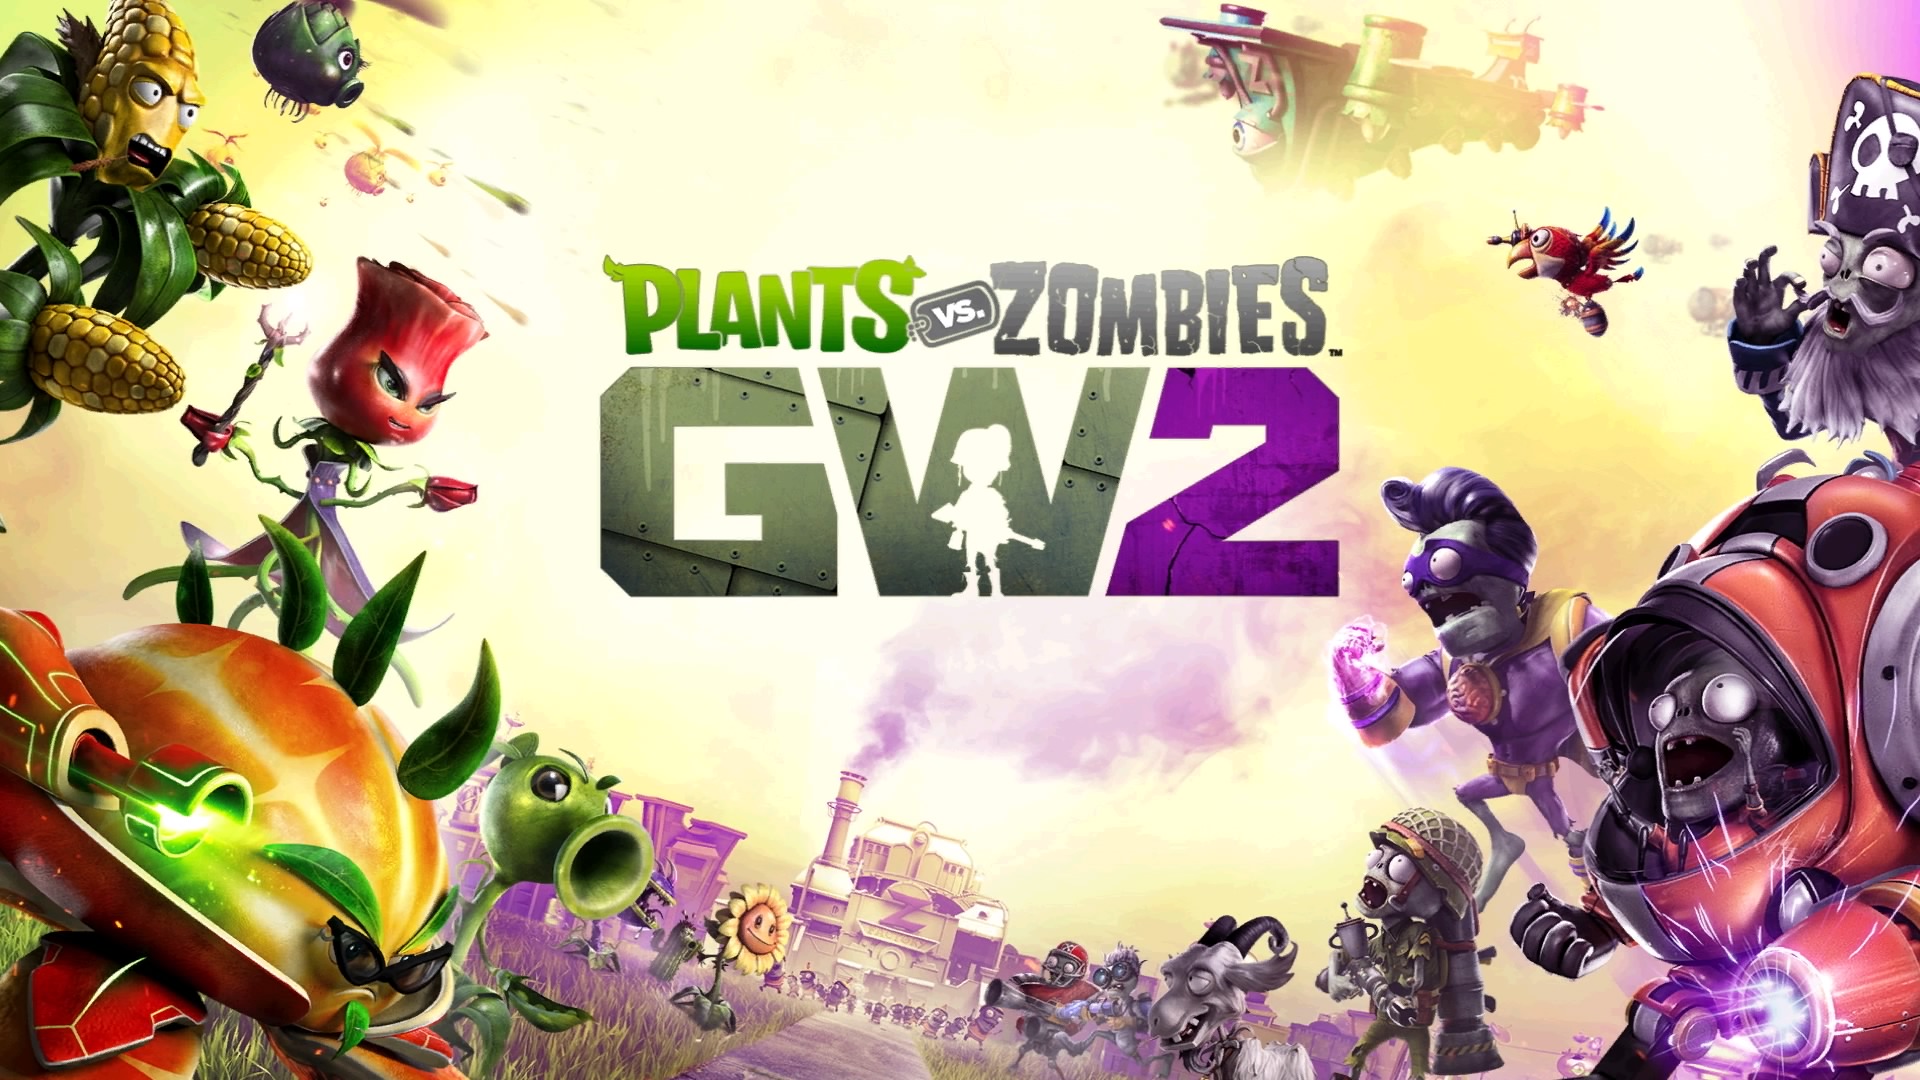 plants vs zombies garden warfare 2 characters gameplay